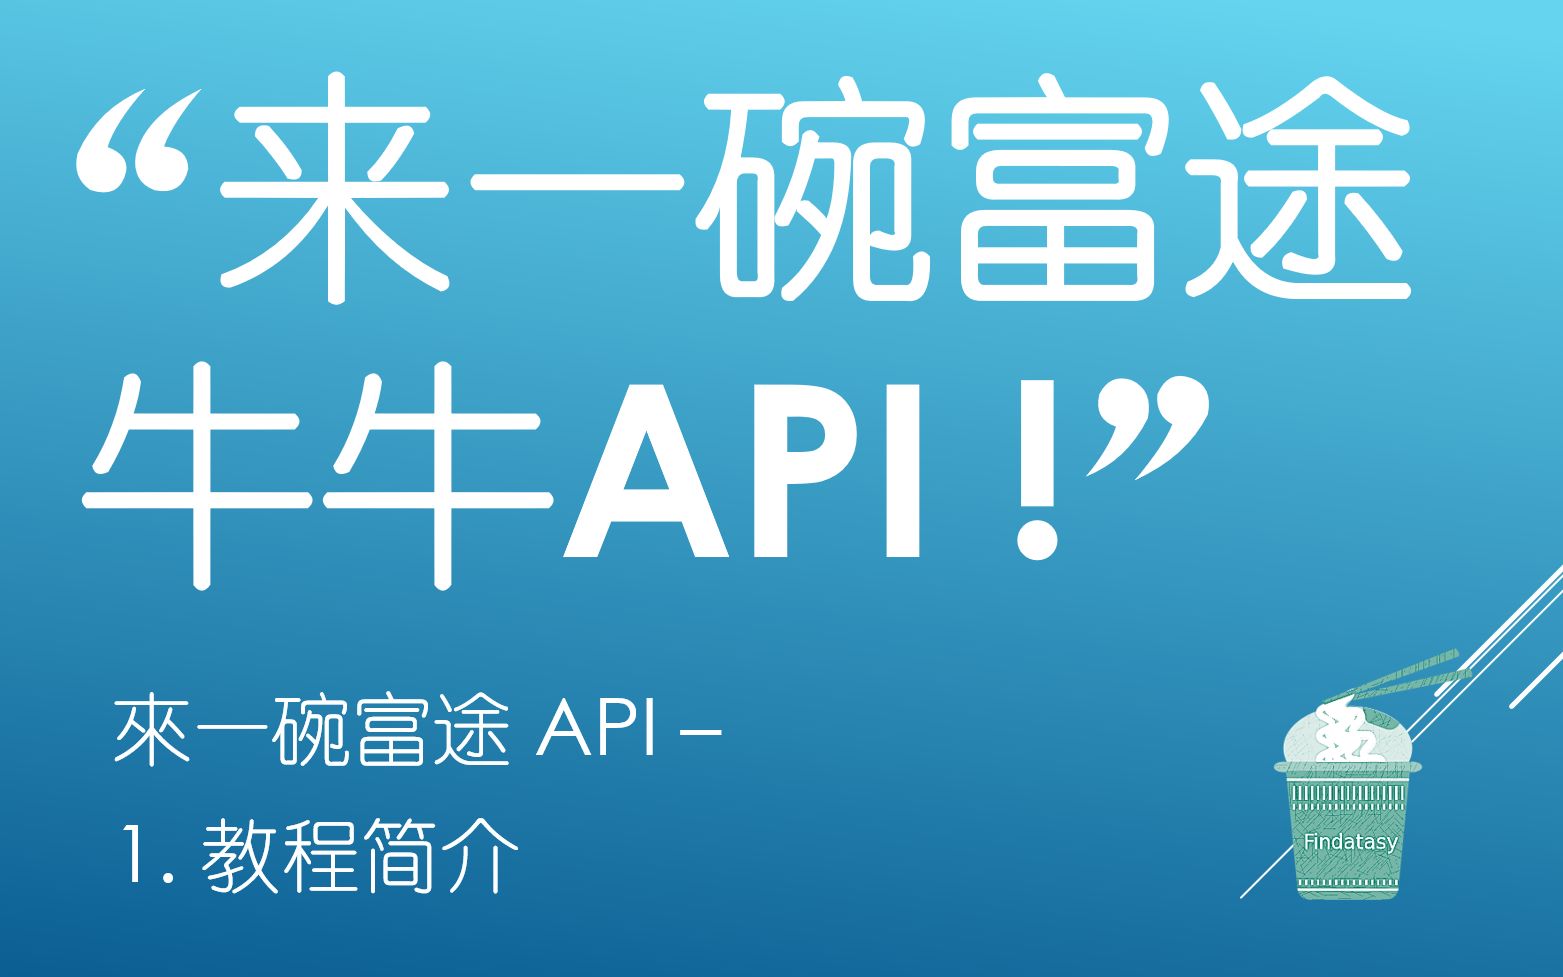 來一碗富途API - 1. 教程簡介(“來一碗富途牛牛API !”)